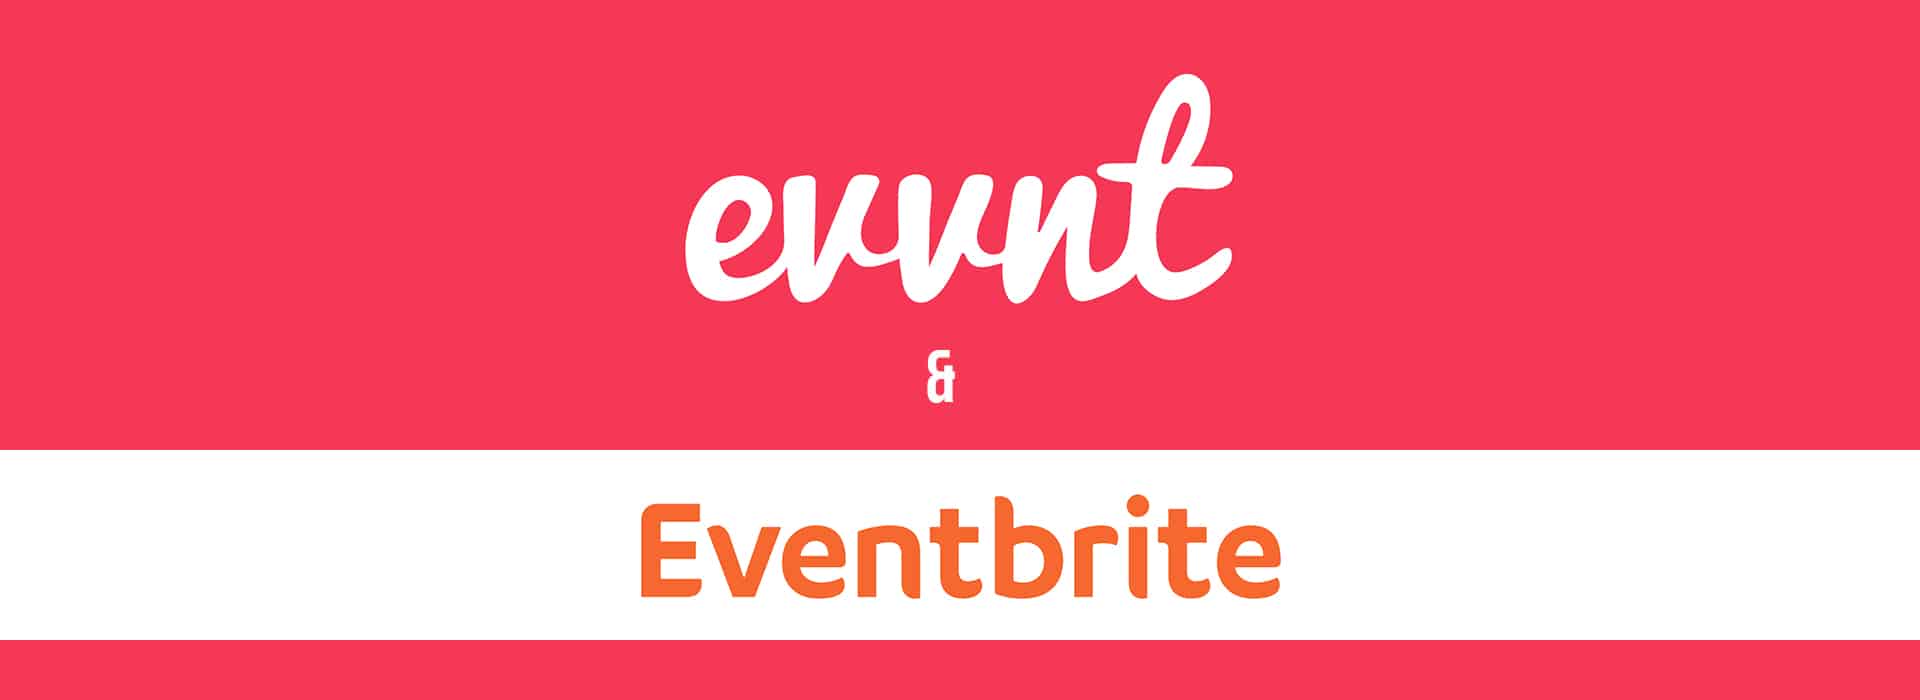 evvnt and Eventbrite graphic